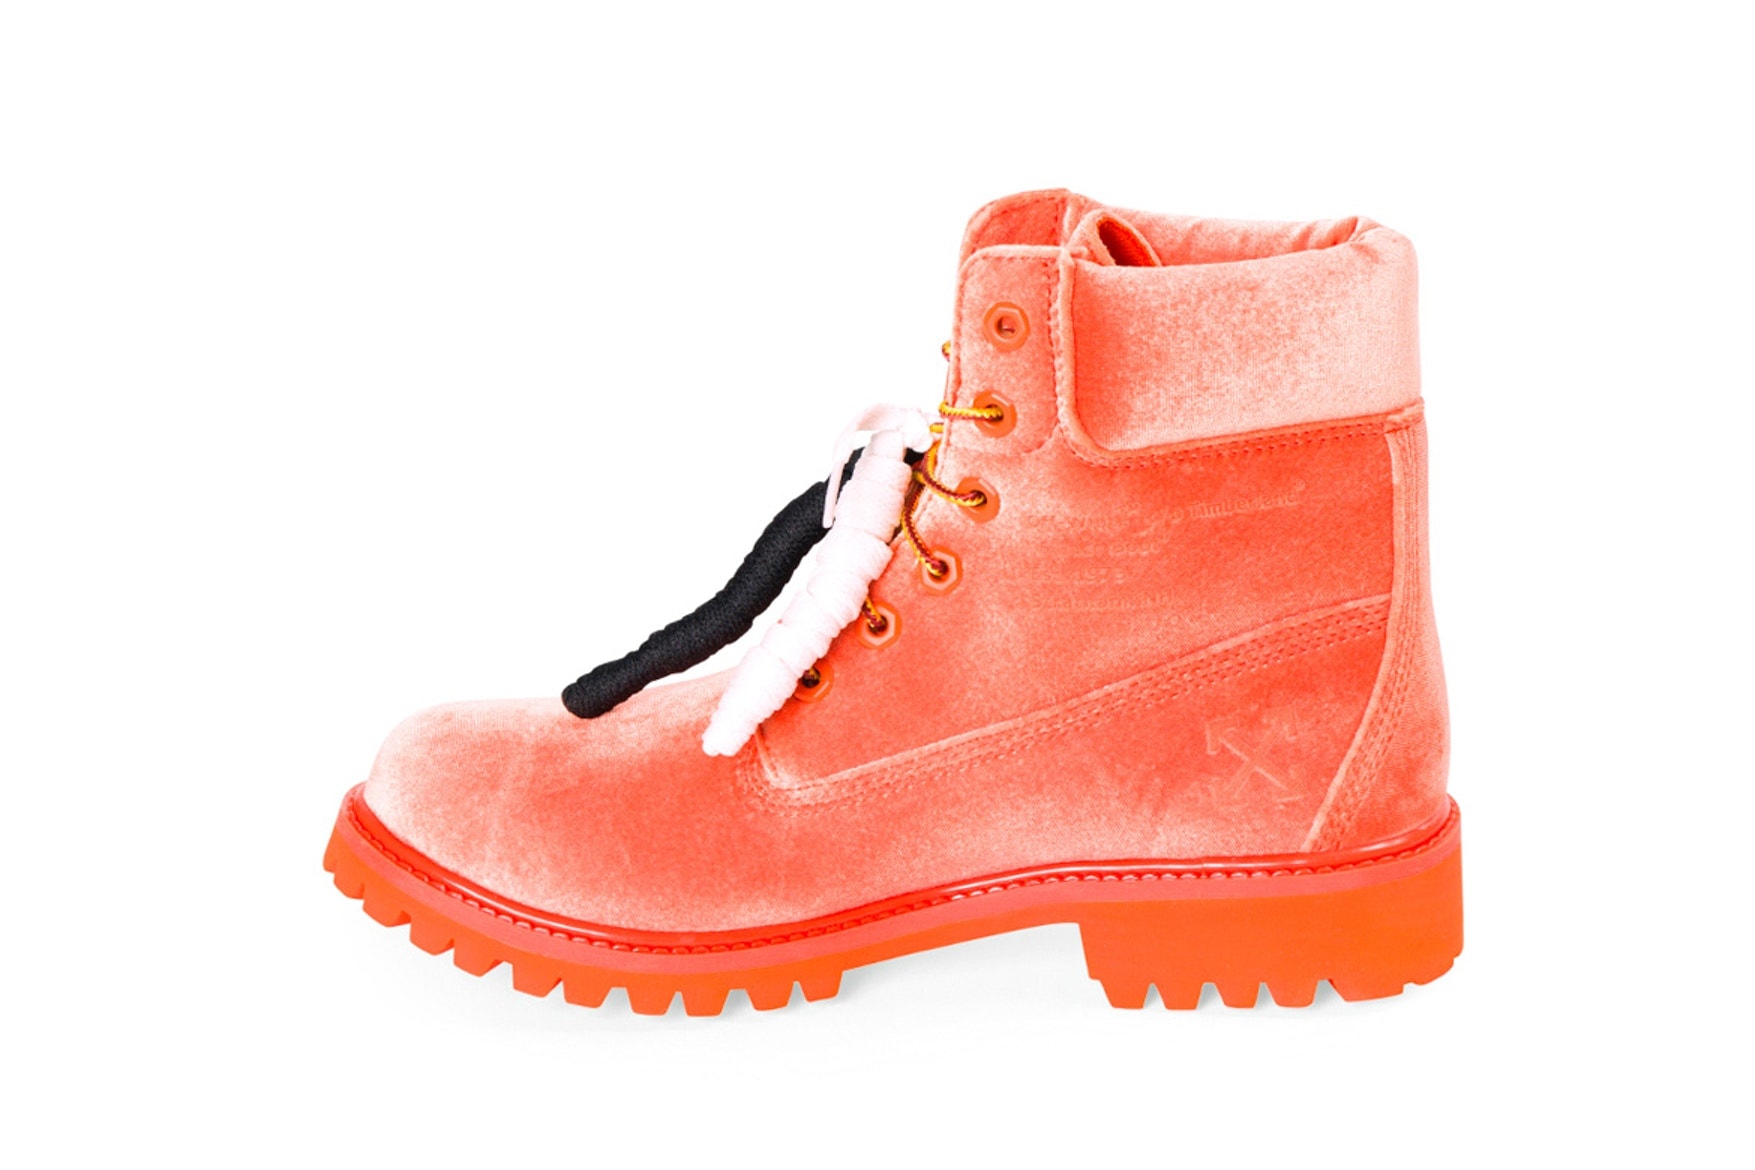 오프 화이트 2018 가을, 겨울 신상 신발 & 팀버랜드 협업 추가 사진 off white fall winter shoes timberland 6 inch boot